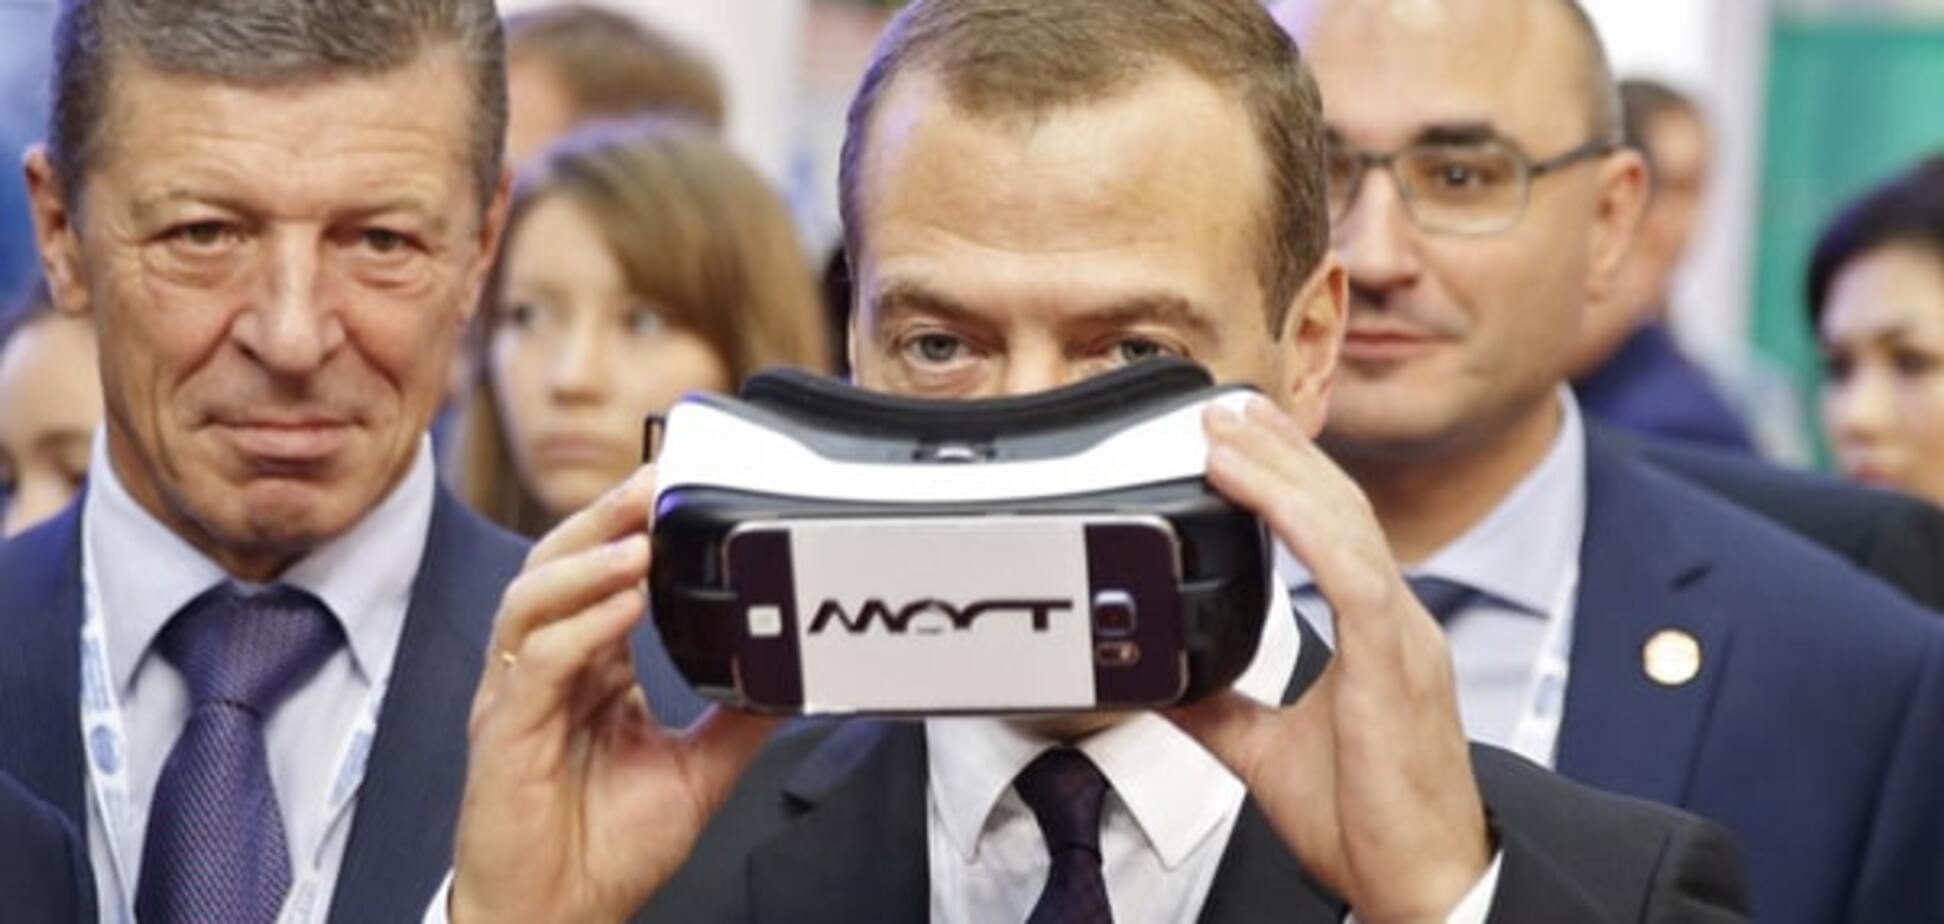 Значок 'Готов ко сну': в соцсетях высмеяли награждение Медведева